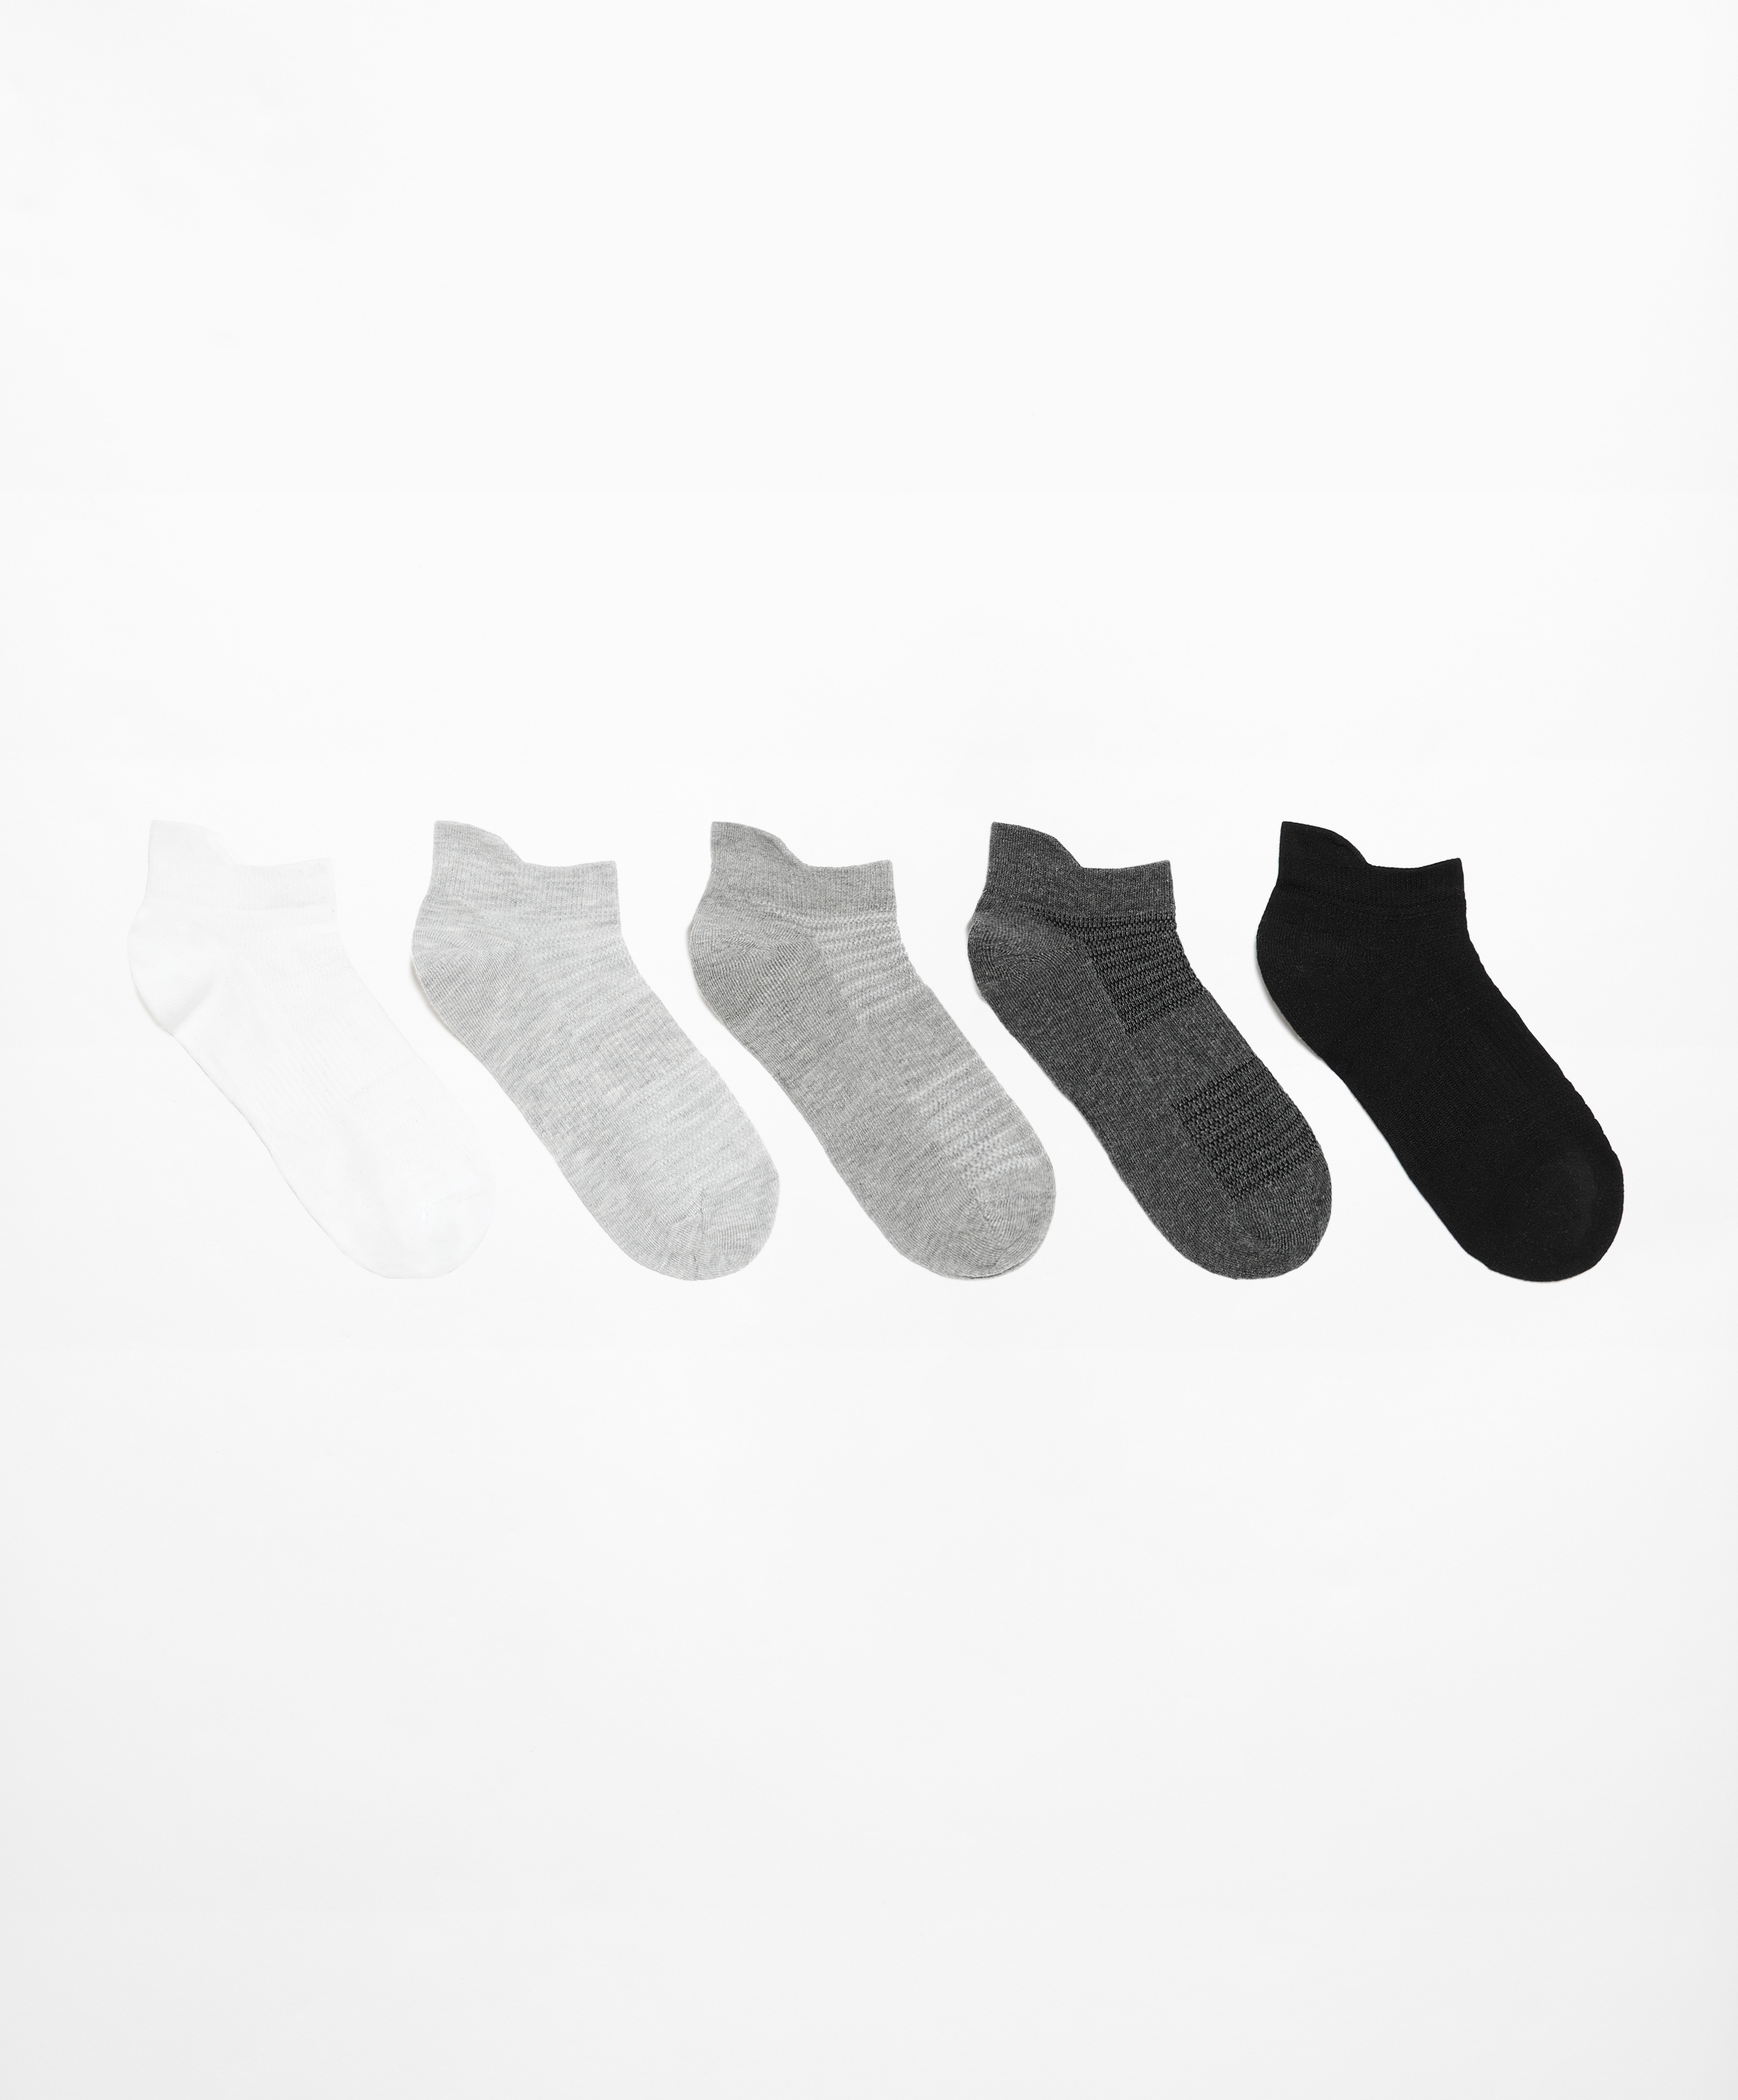 5 ζεύγη αθλητικές κάλτσες sneaker με γλώσσα με μείγμα από βαμβάκι